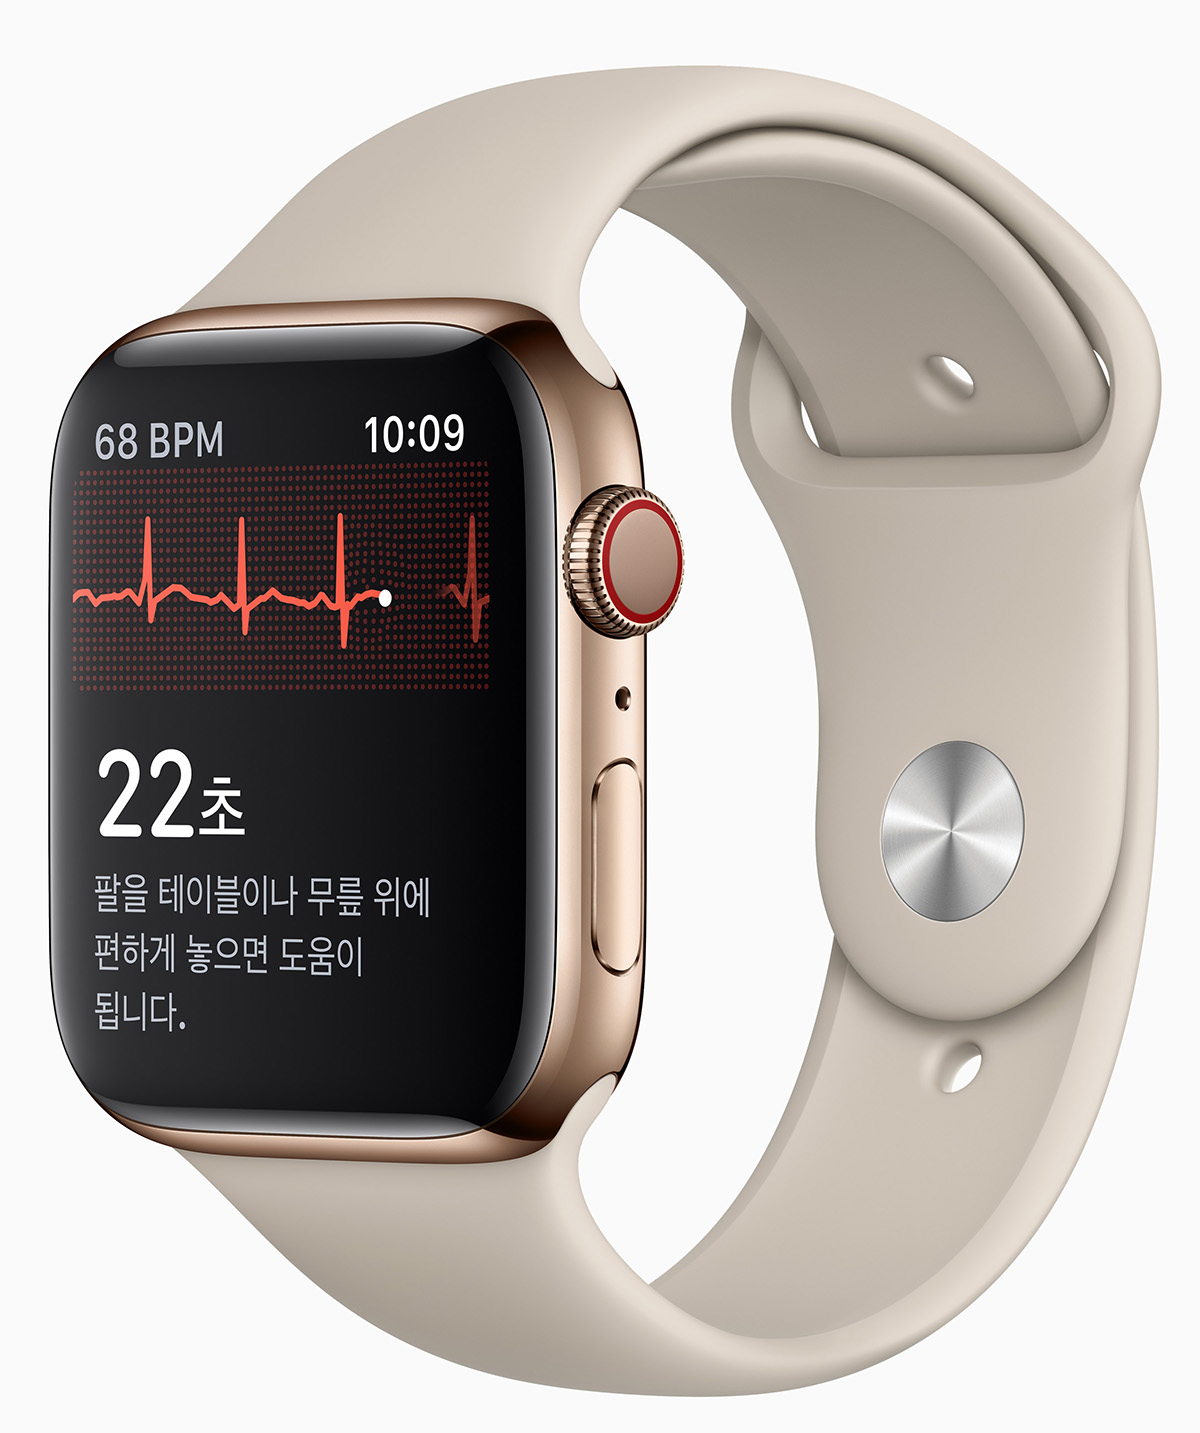 韓國 Apple Watch 將開放心電圖和心律不整通知功能 | ECG | iPhone News 愛瘋了